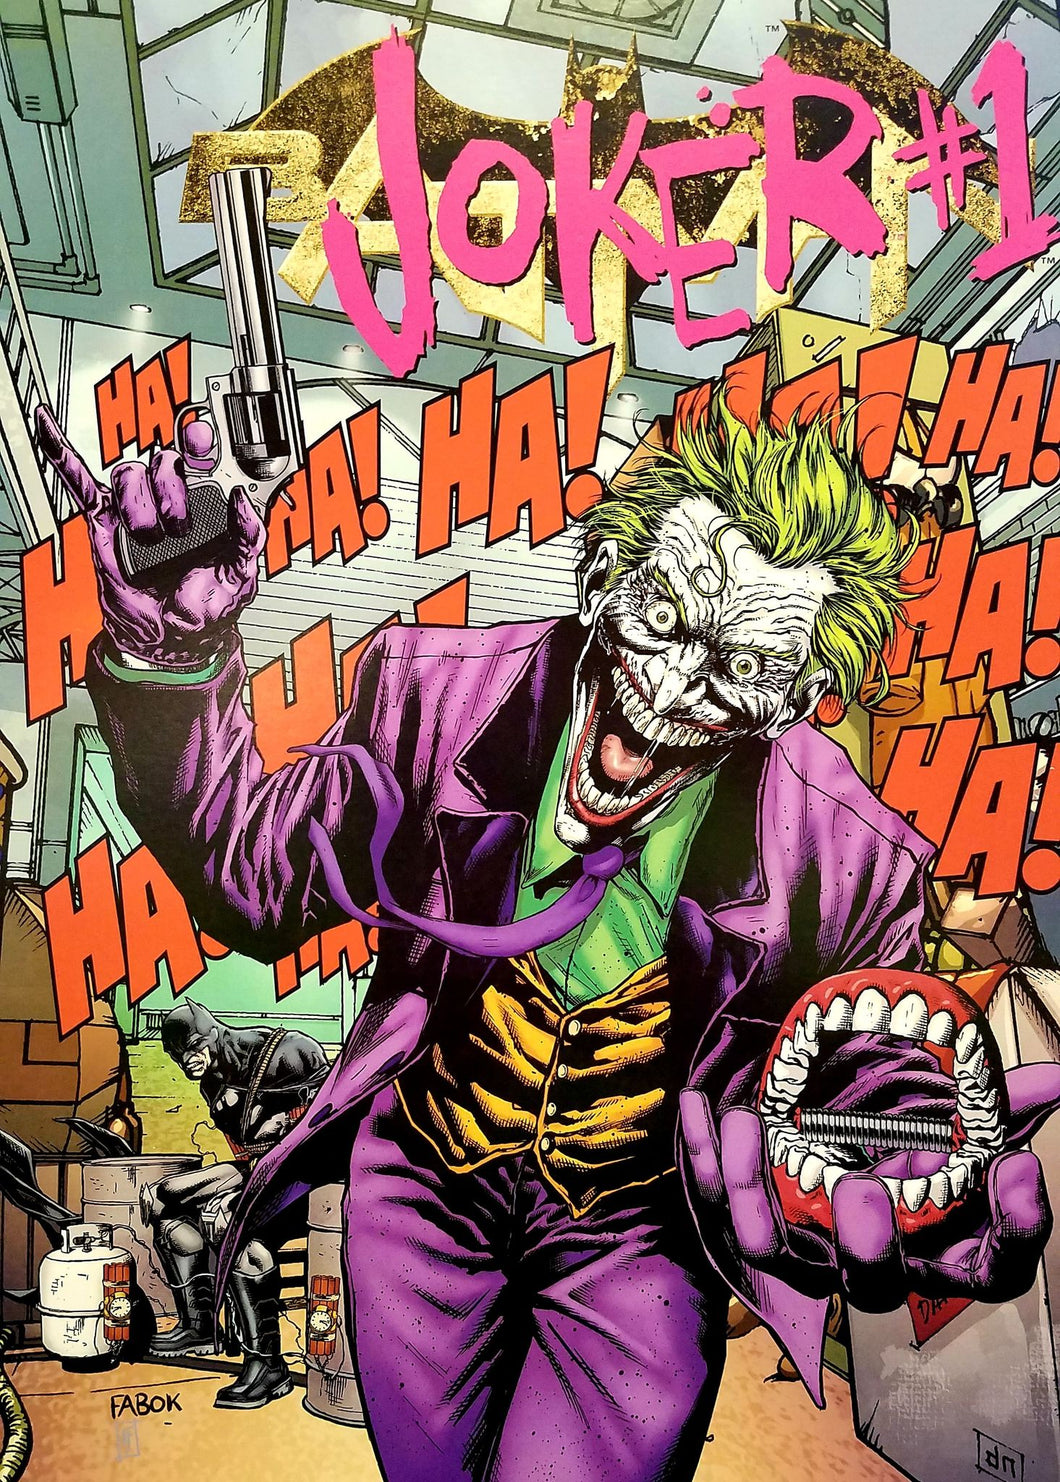 Joker vs. Batman 12x16 FRAMED Art Print by Jason Fabok, New DC Comics